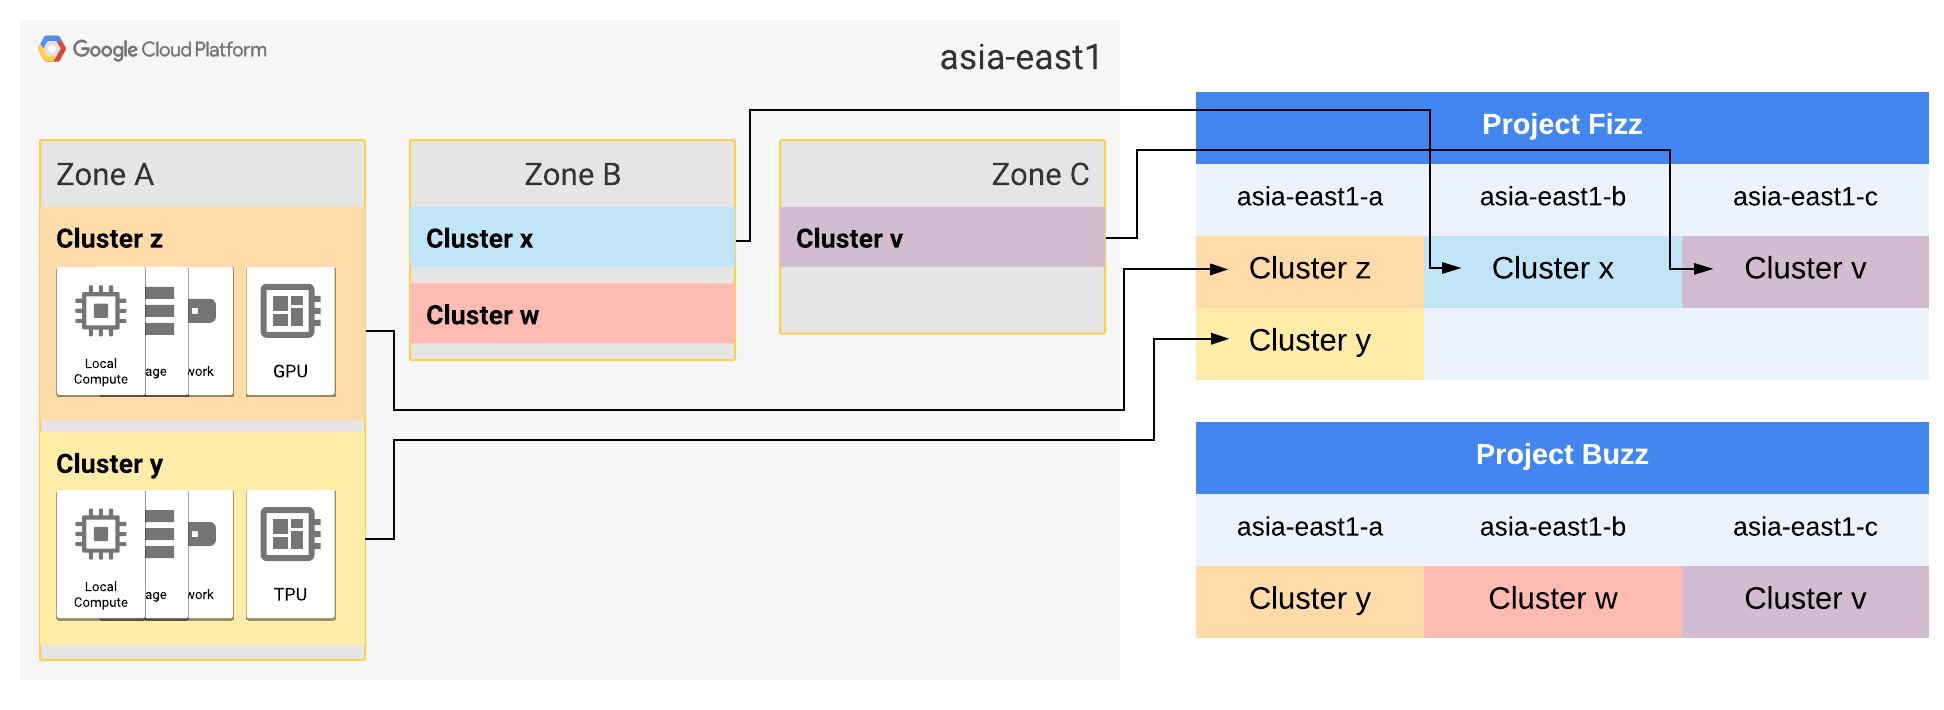 asia-east1 영역 A 및 B는 각각 두 클러스터로 확장됩니다.